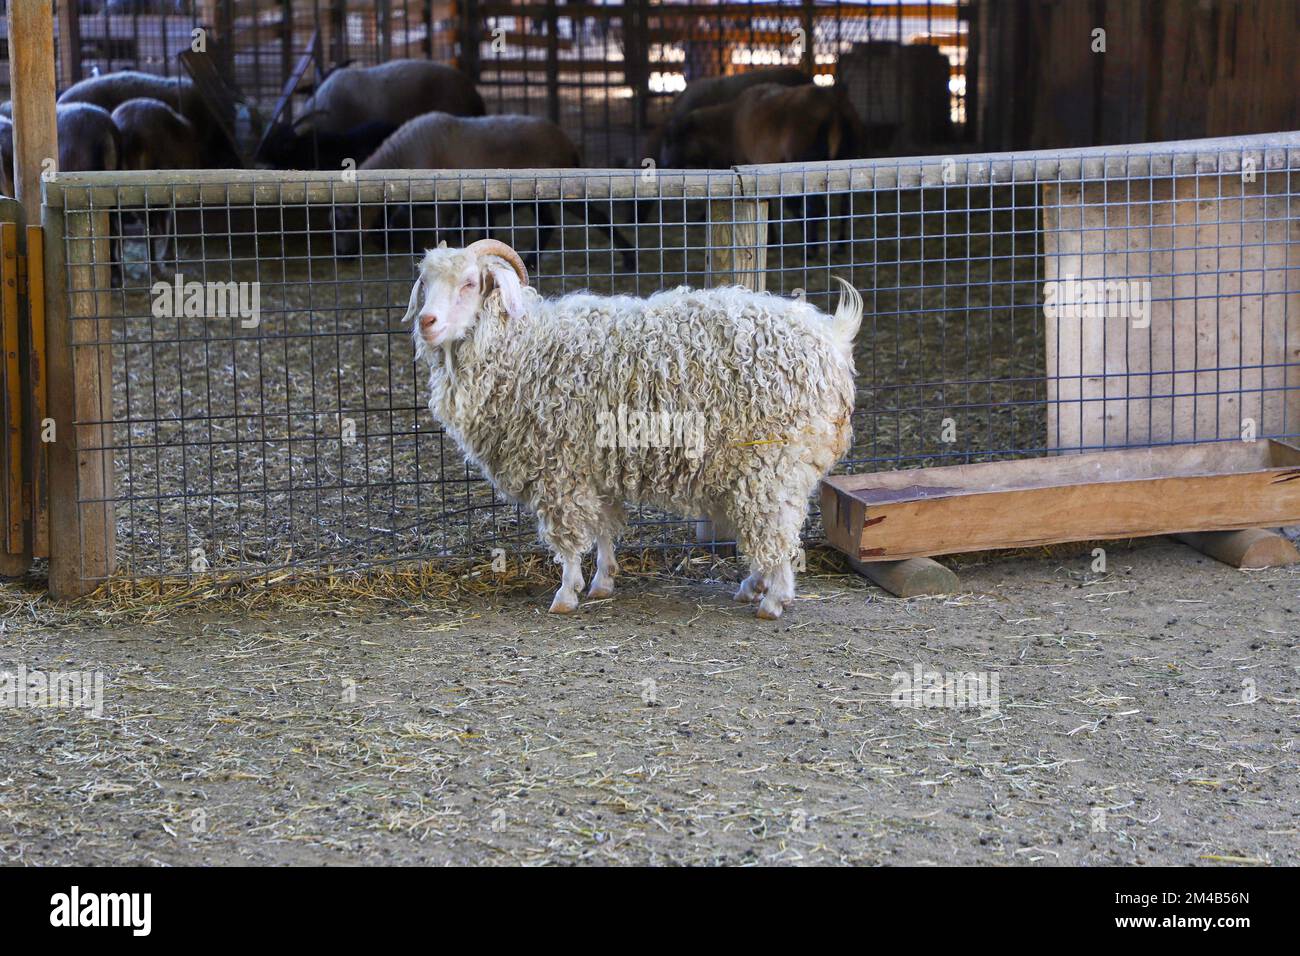 Im Zoo, hinter dem Zaun, ein Schaf mit weißen Locken und Hörnern Stockfoto